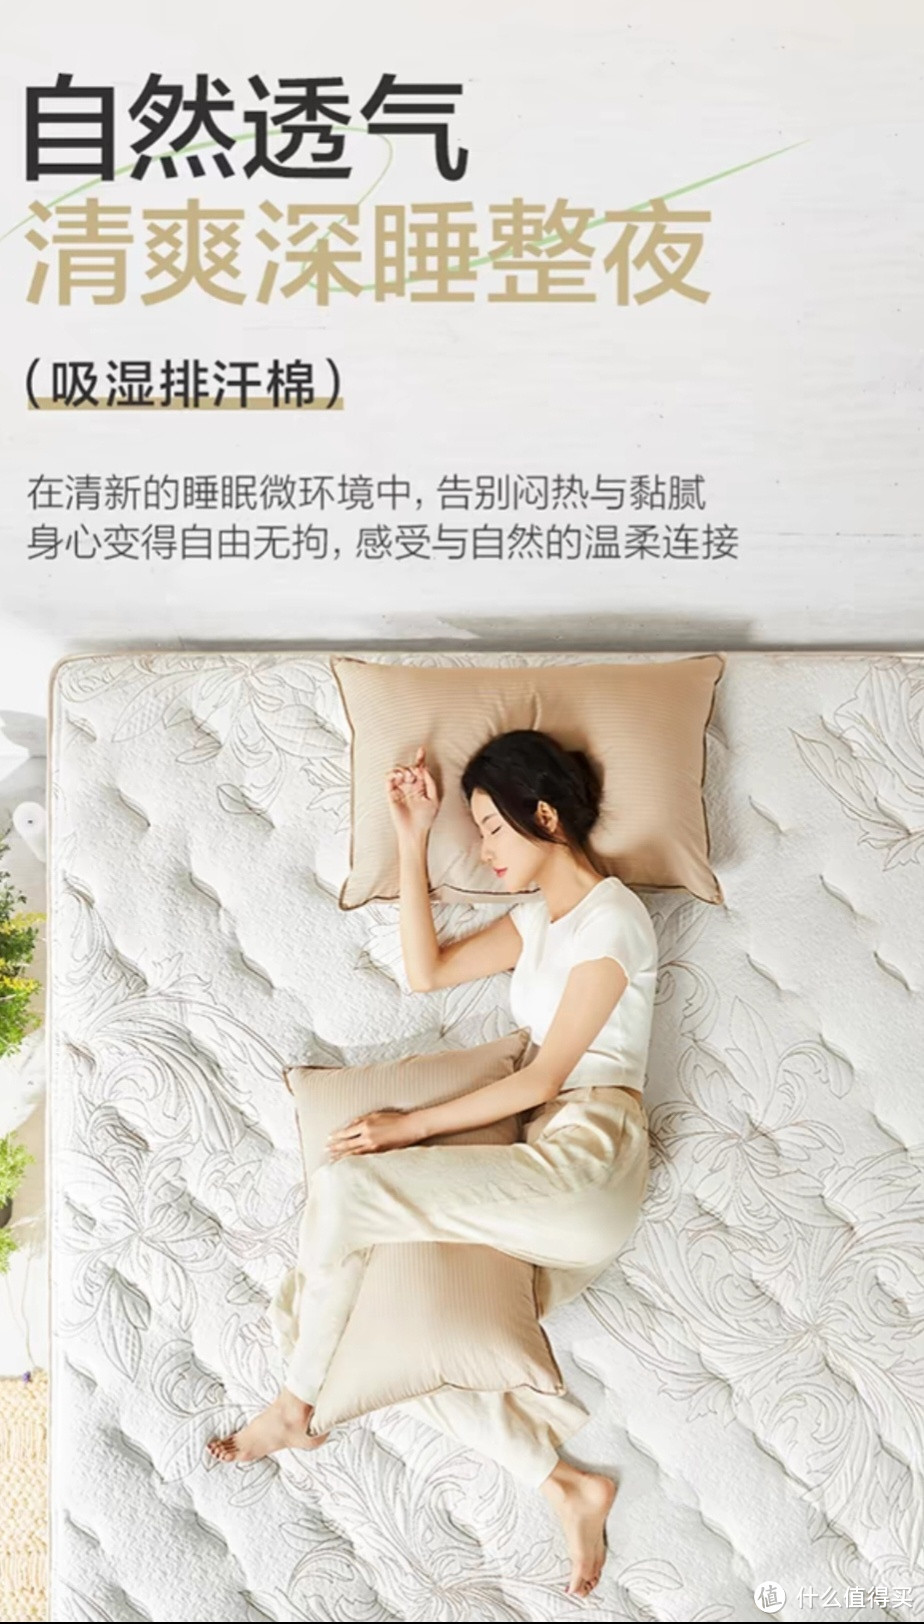 【舒缦3.0】喜临门官方席梦思独袋弹簧家用卧室软垫进口乳胶床垫